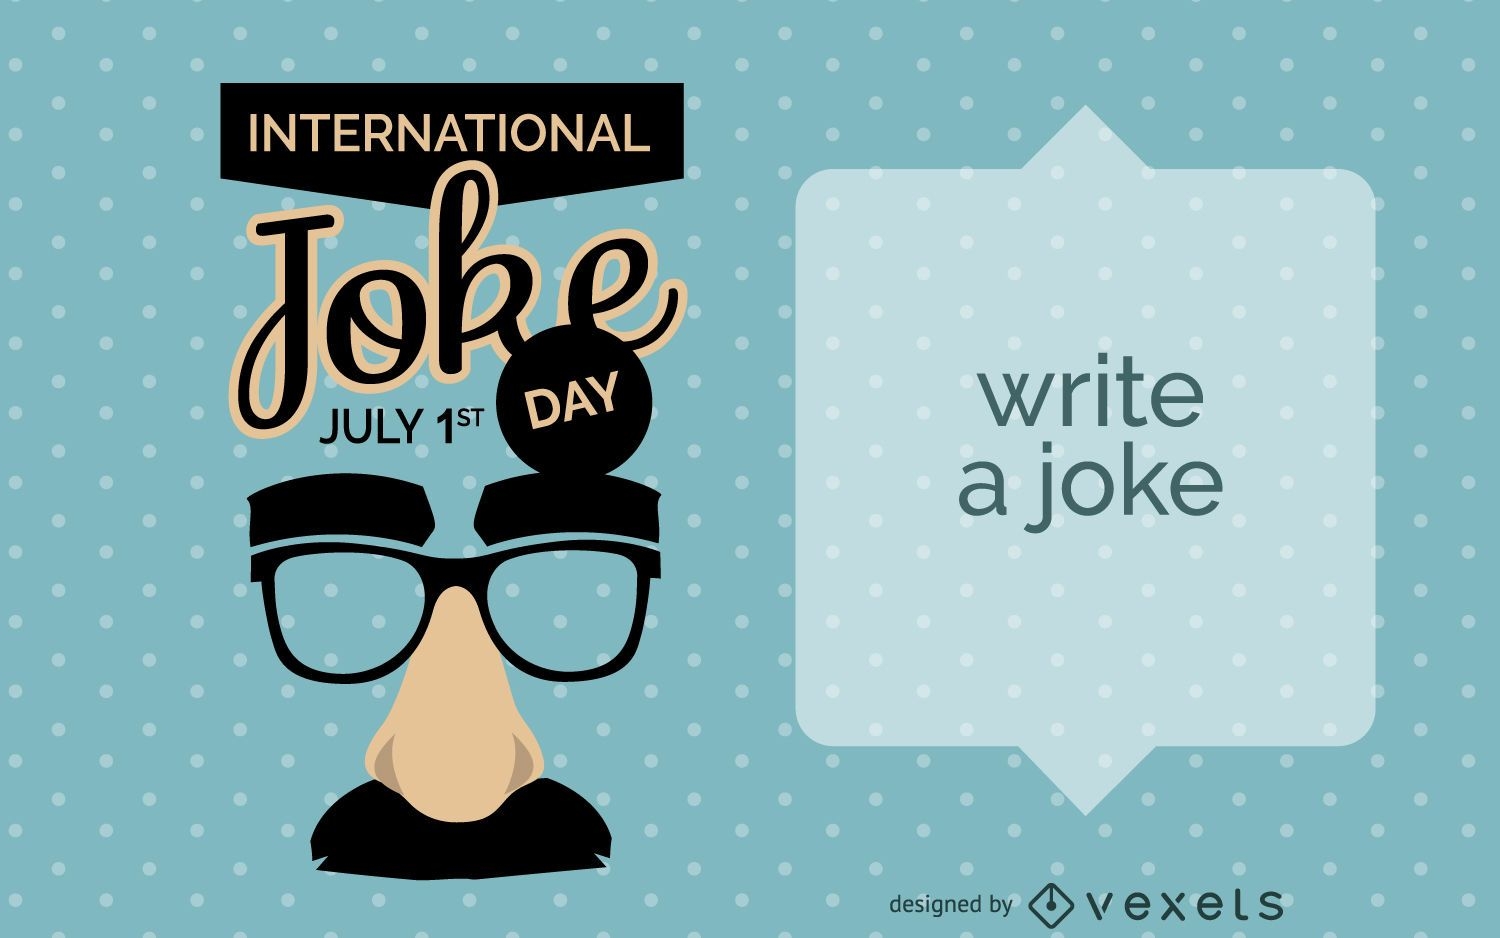 Joke Day card design